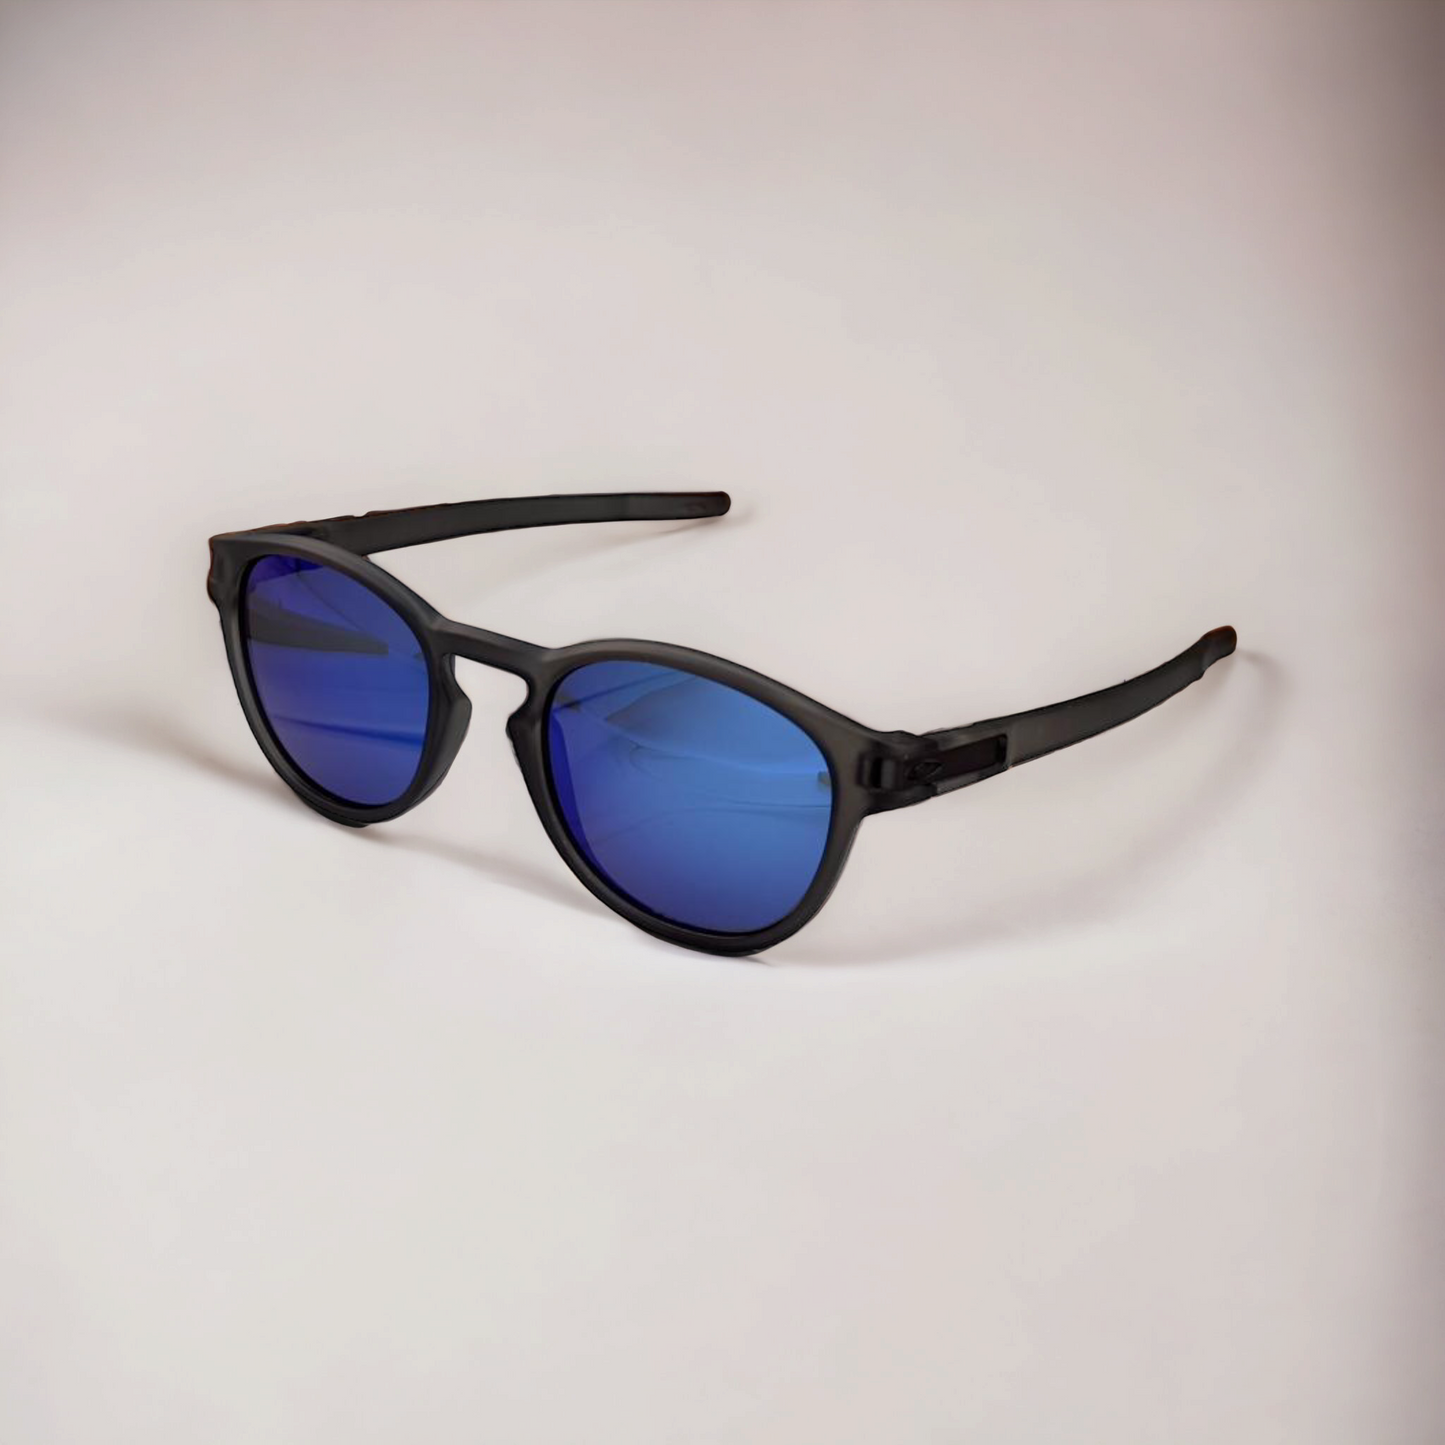 Jack Marc New Polarized sunglasses